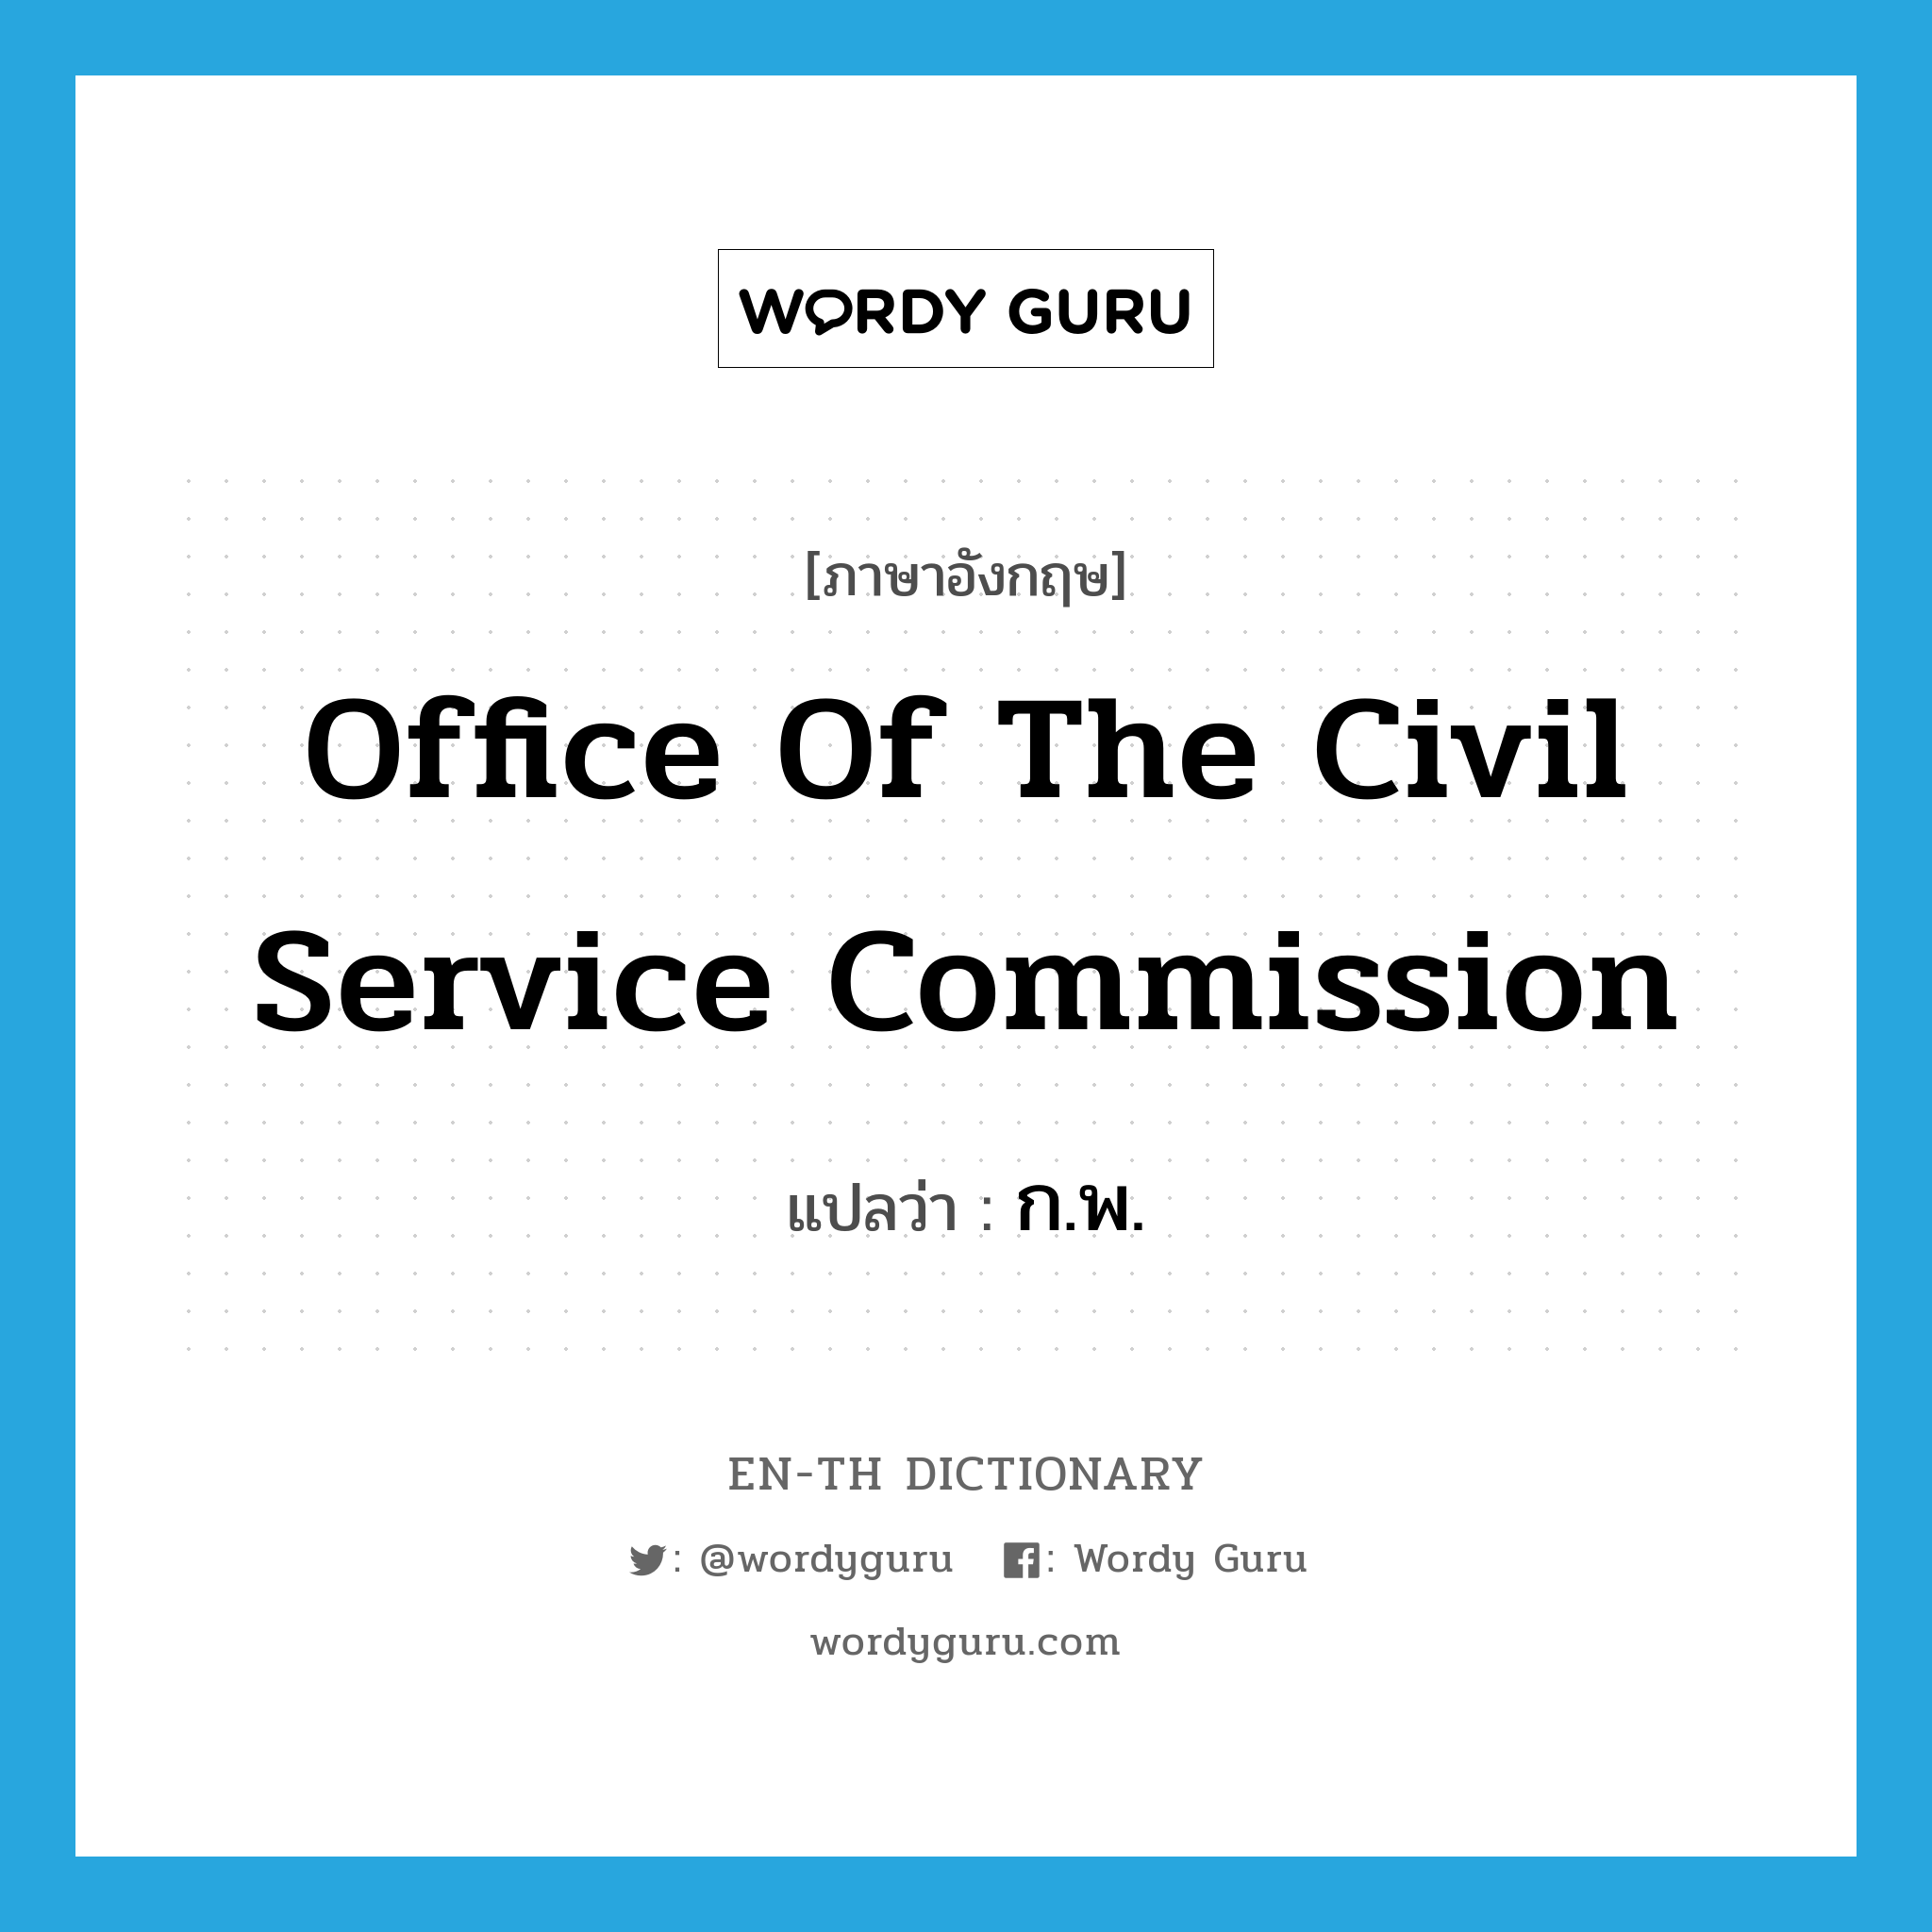 ก.พ. ภาษาอังกฤษ?, คำศัพท์ภาษาอังกฤษ ก.พ. แปลว่า Office of the Civil Service Commission ประเภท N หมวด N